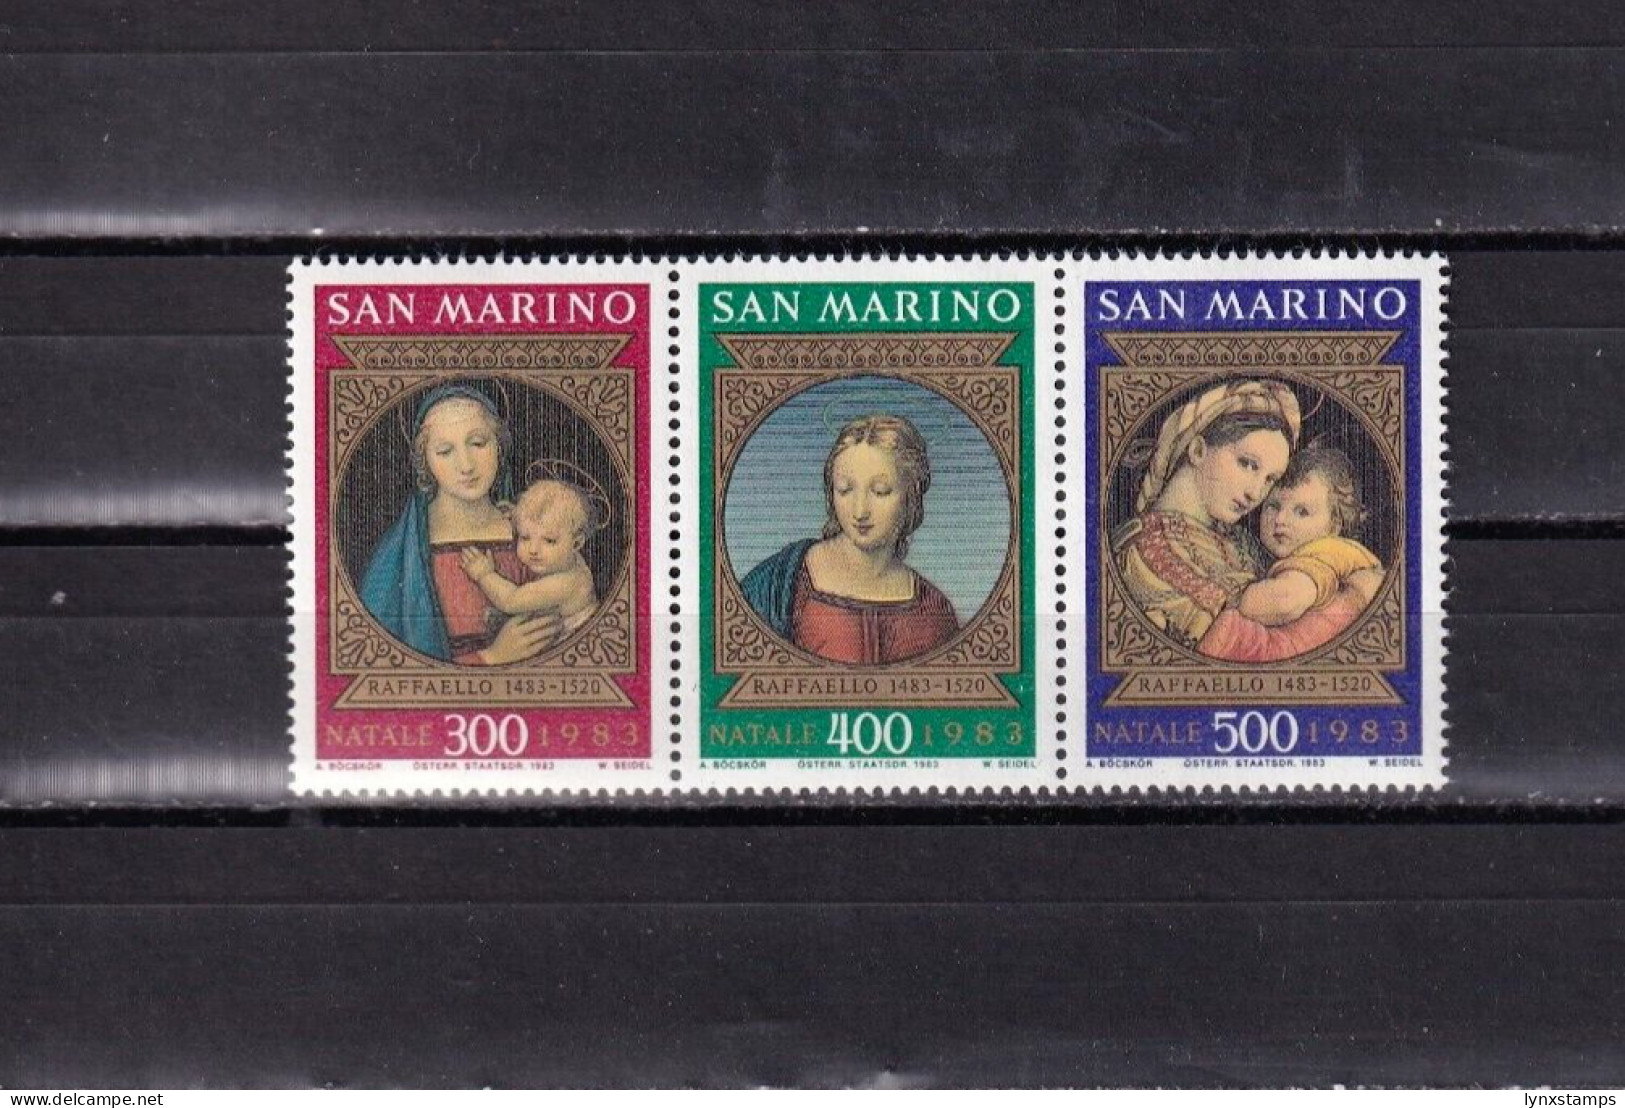 SA04 San Marino 1983 The 500th Anniversary Of The Birth Of Raffaelo Sanzio Mint - Unused Stamps